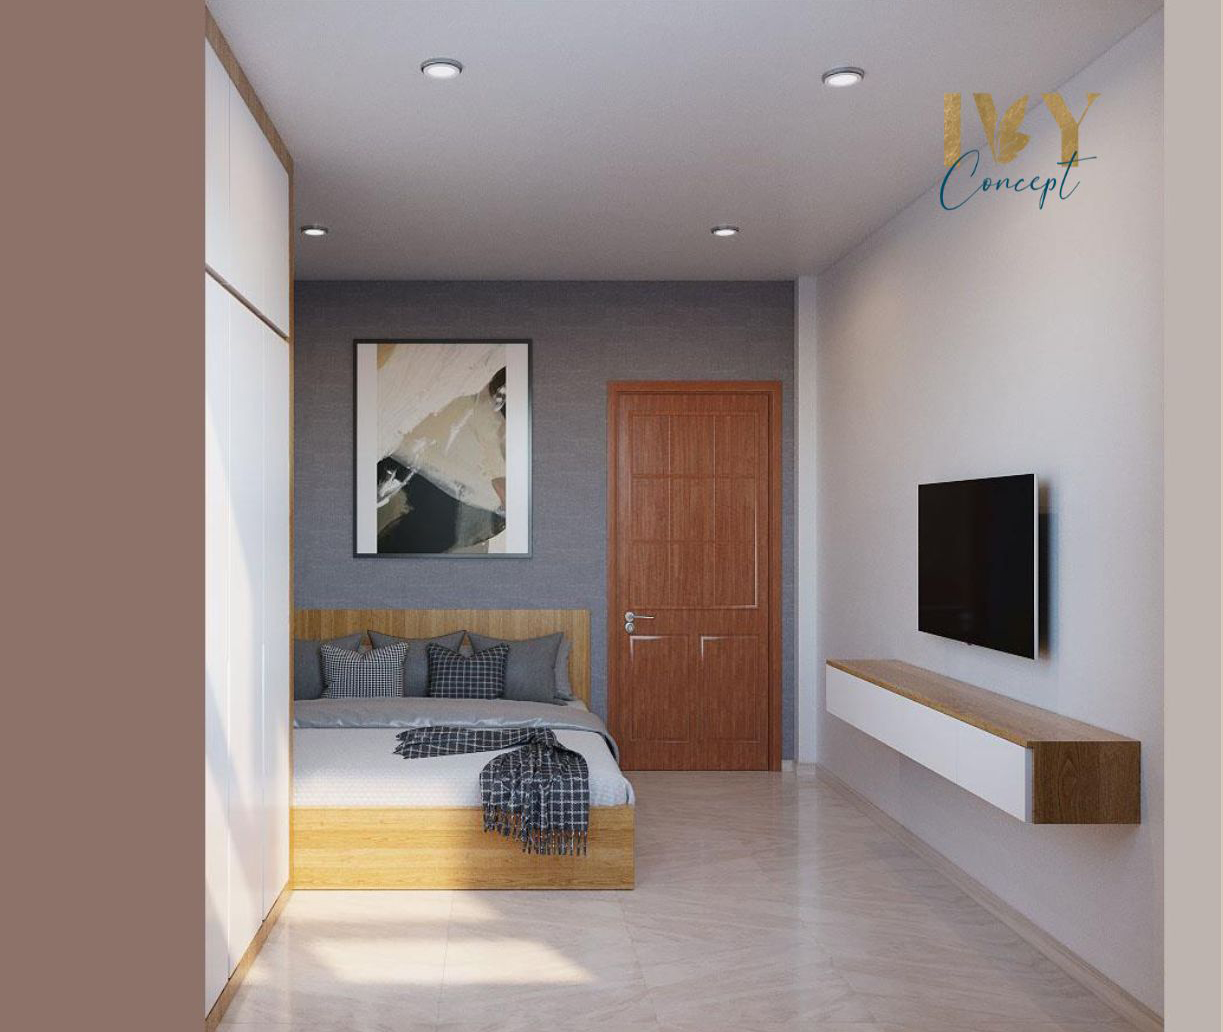 Phòng ngủ, phong cách Bắc Âu Scandinavian, thiết kế concept nội thất, căn hộ The CBD Premium Home